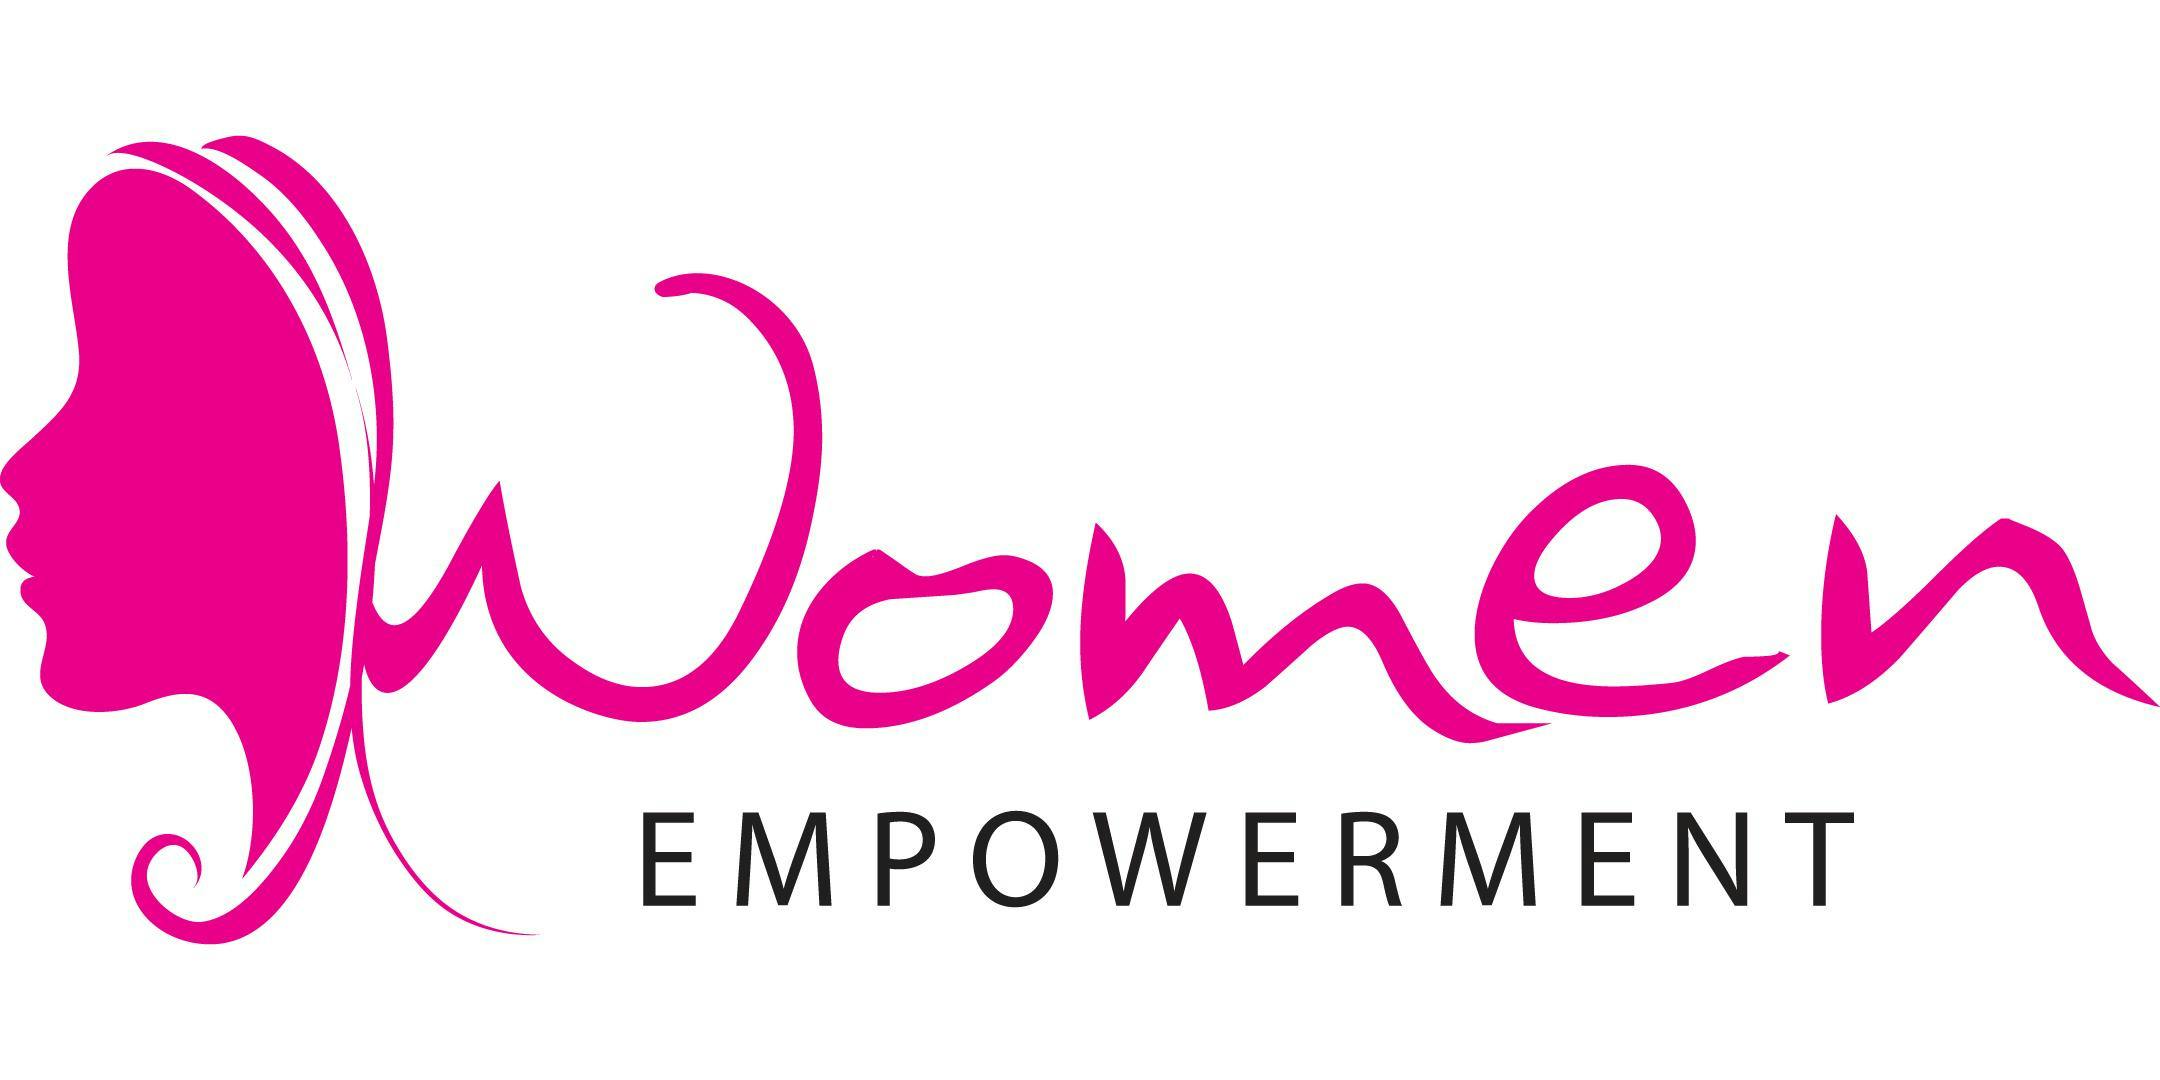 Be women com. Women Empowerment. Empowered woman. Women Empowerment logo. Women’s Empowerment картинка.